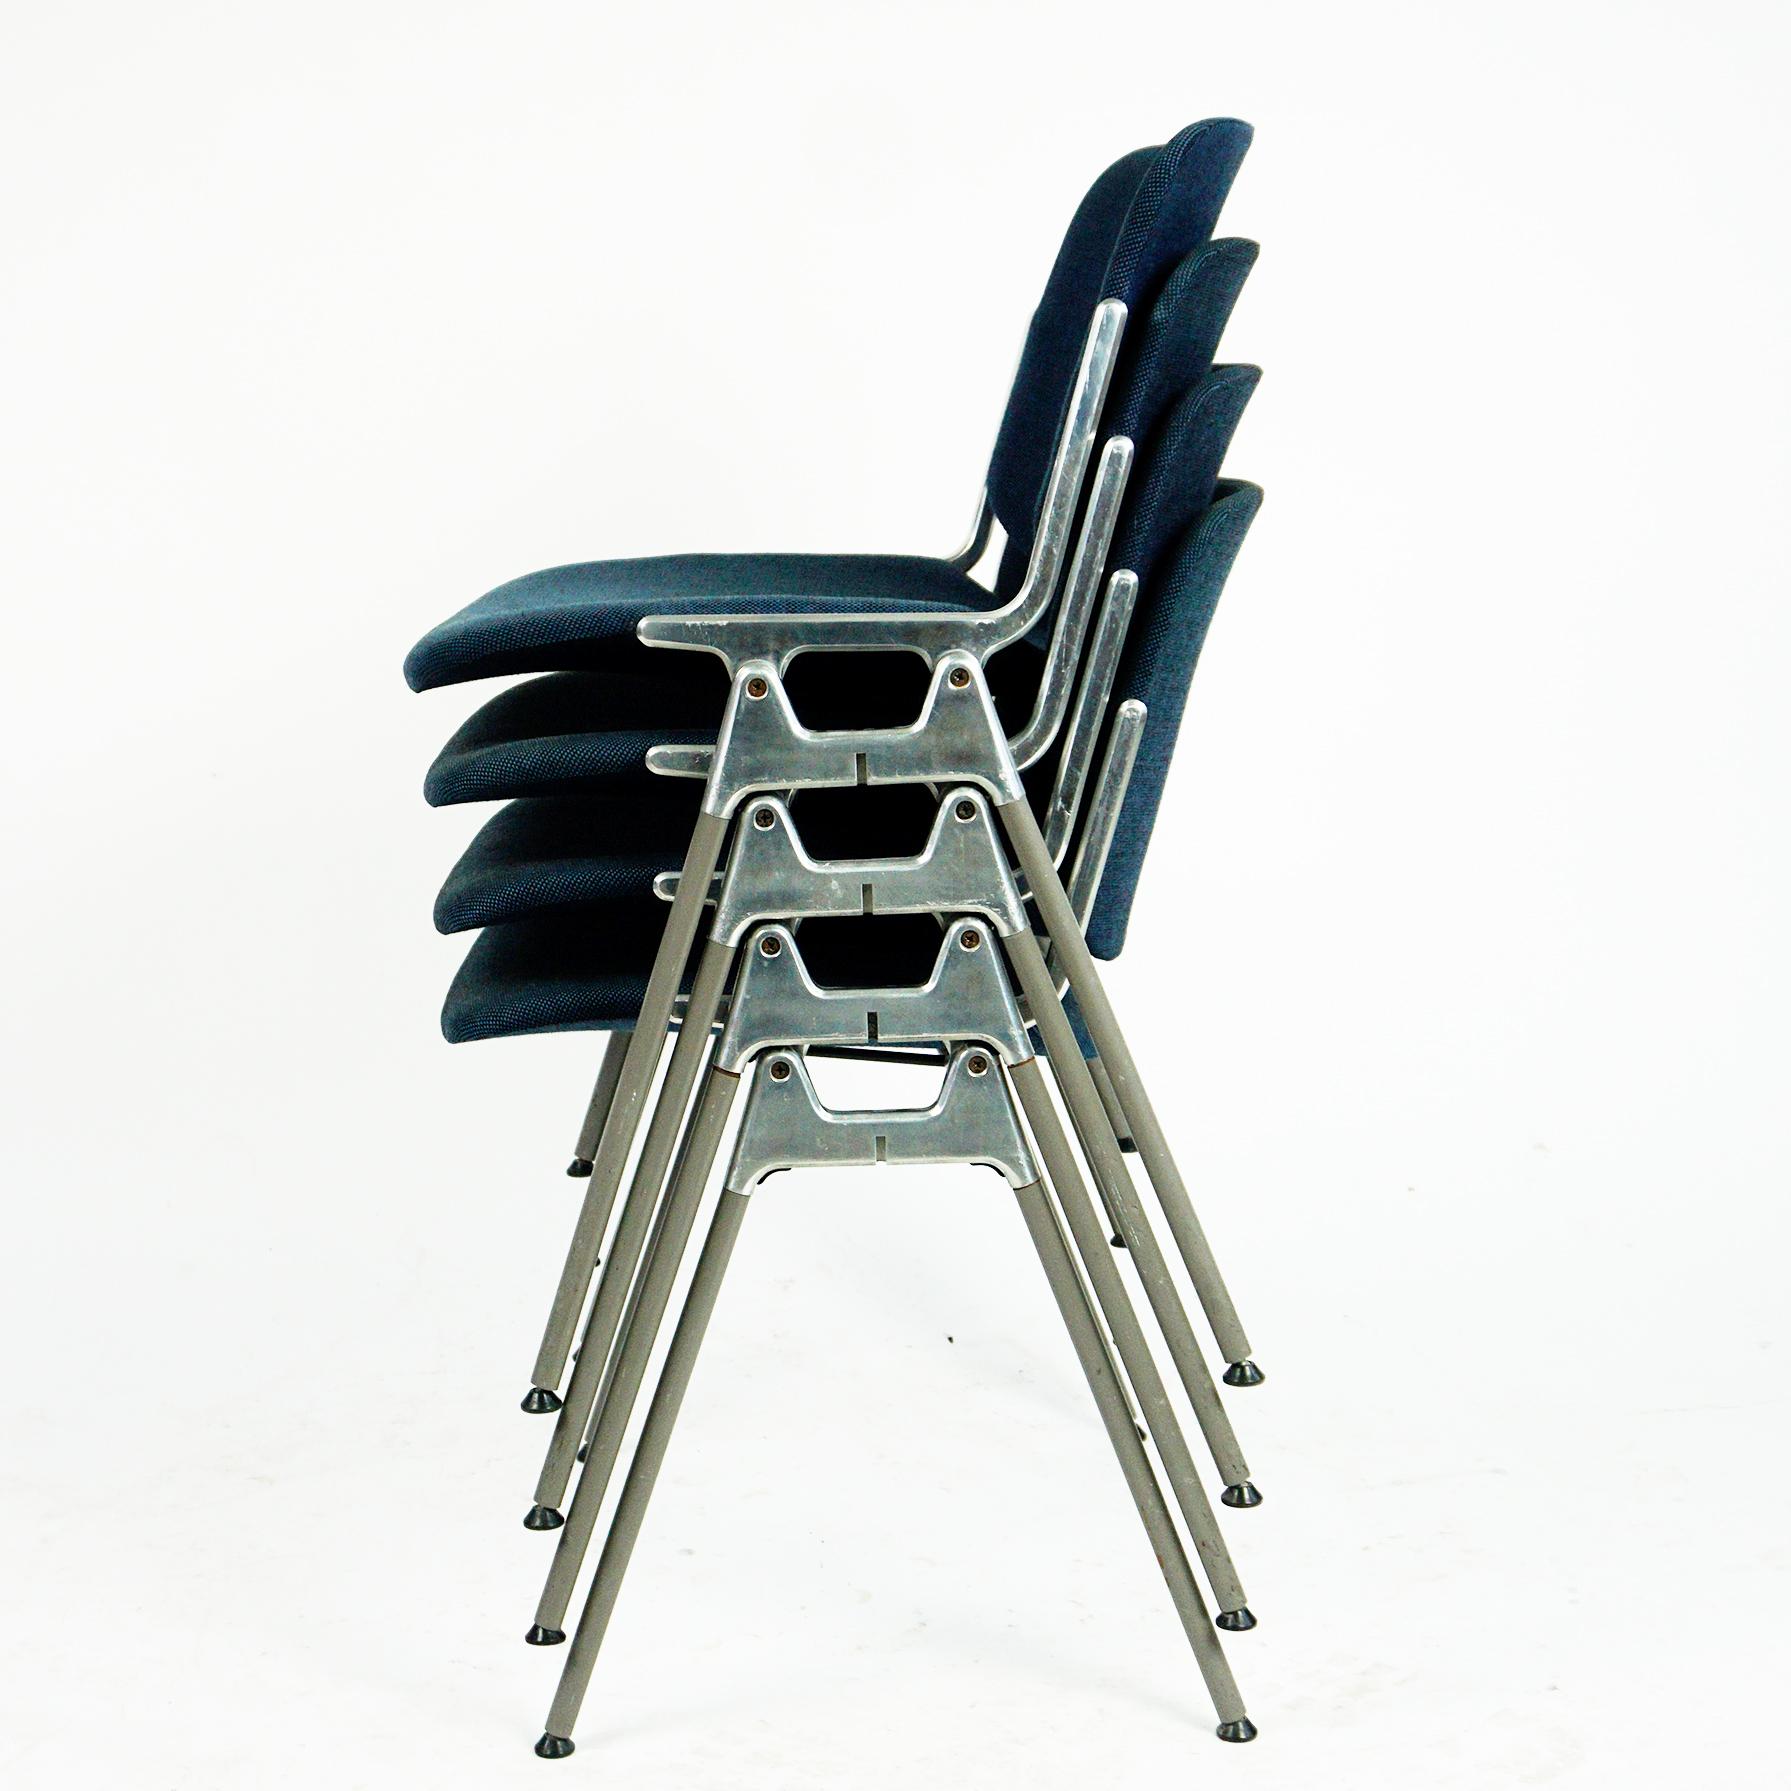 Satz von vier ikonischen italienischen modernen DSC 106 Stapelstühlen, entworfen 1965 von Giancarlo Piretti für Castelli. Diese Garnitur verfügt über mit blauem Stoff bezogene Sitze und Rückenlehnen in sehr schönem Zustand mit nur wenigen